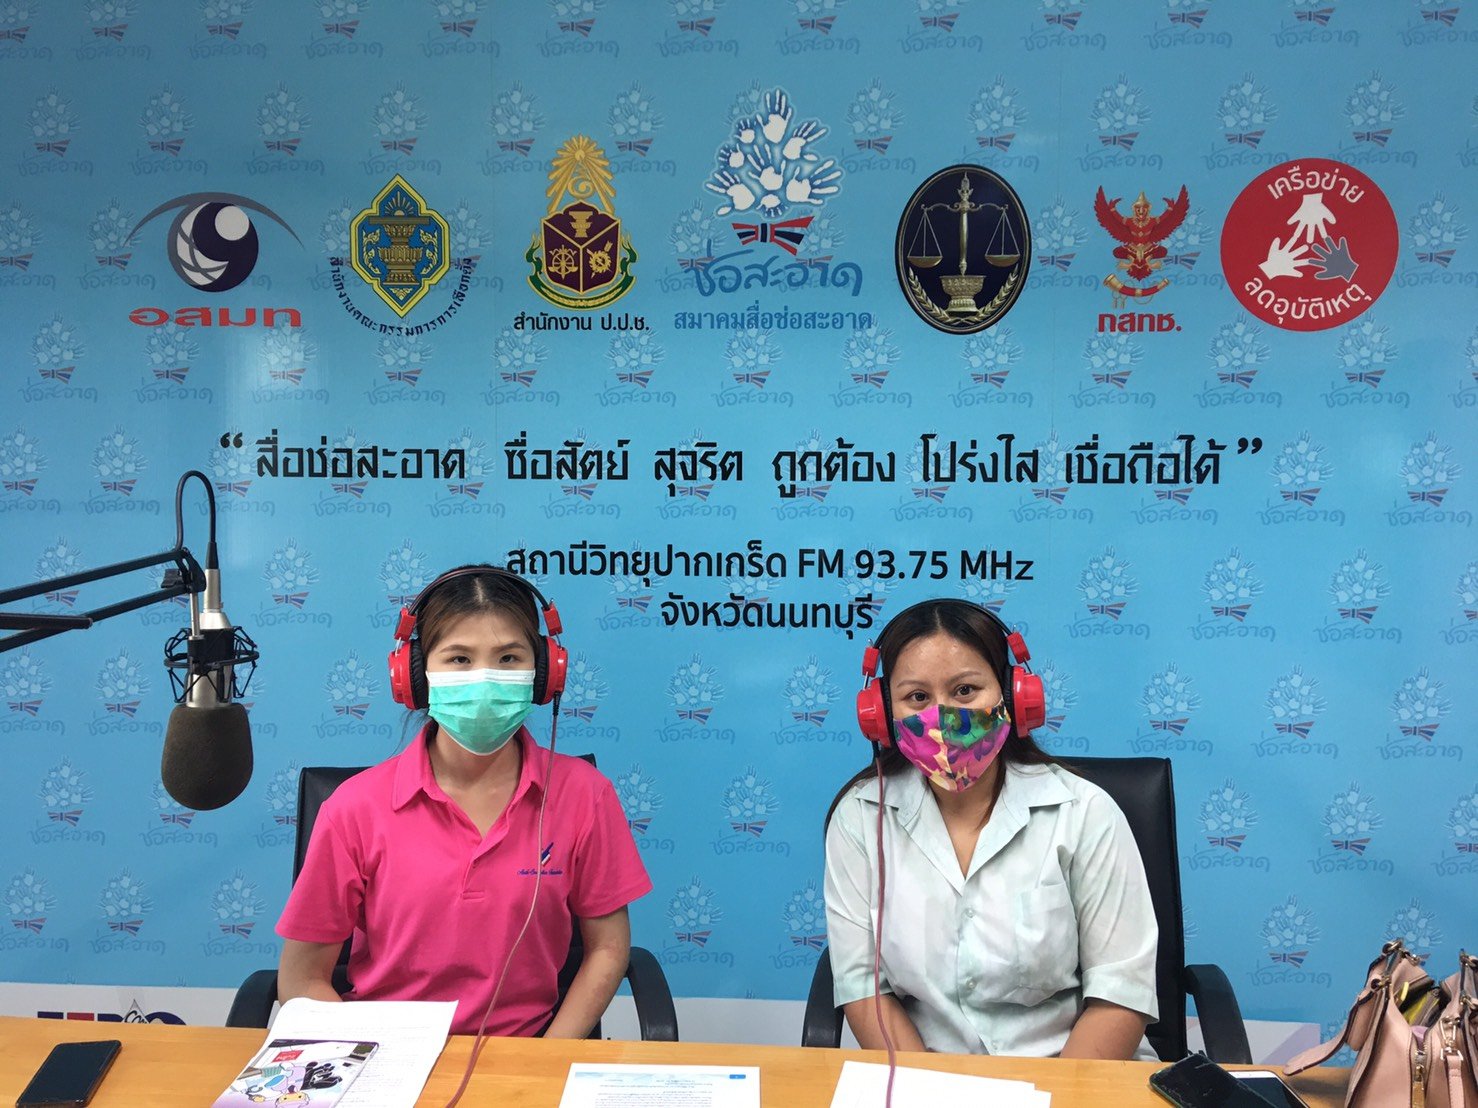 รายการ “คนไทยไม่ทนต่อการทุจริต”  วันเสาร์ที่ 9 ตุลาคม 2564 เวลา 18.00-18.30 น.